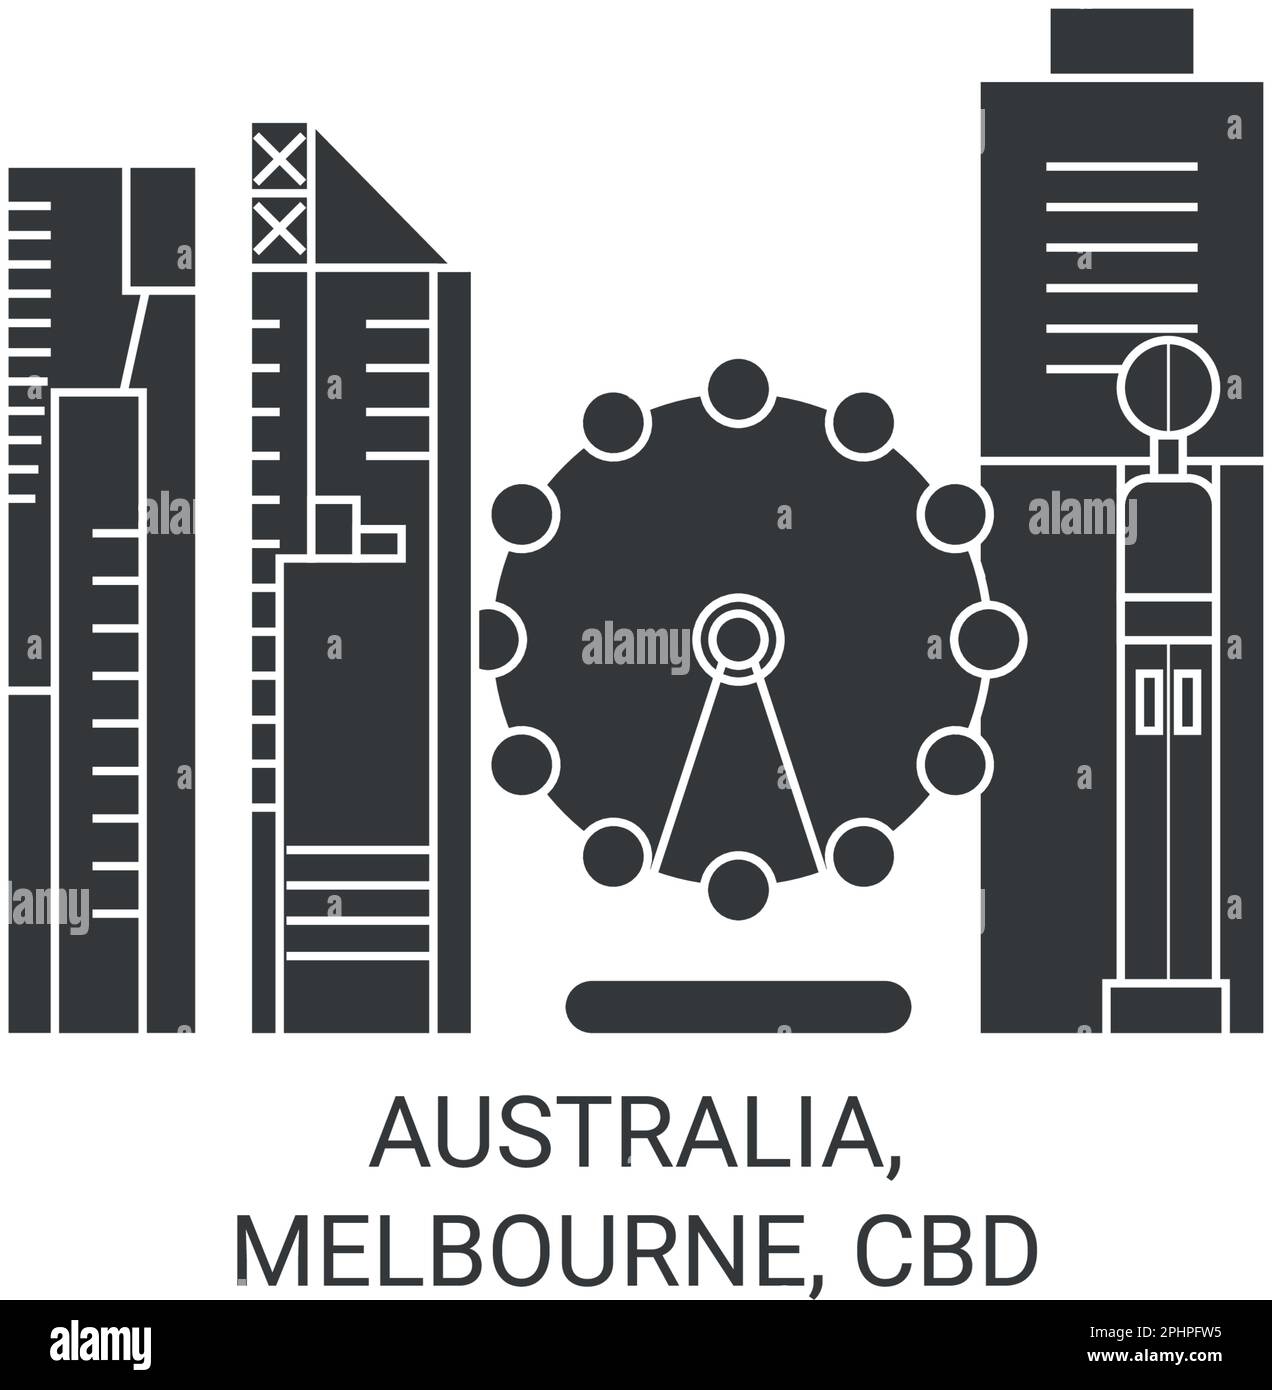 Australia, Melbourne, Cbd travel landmark vector illustration Stock Vector